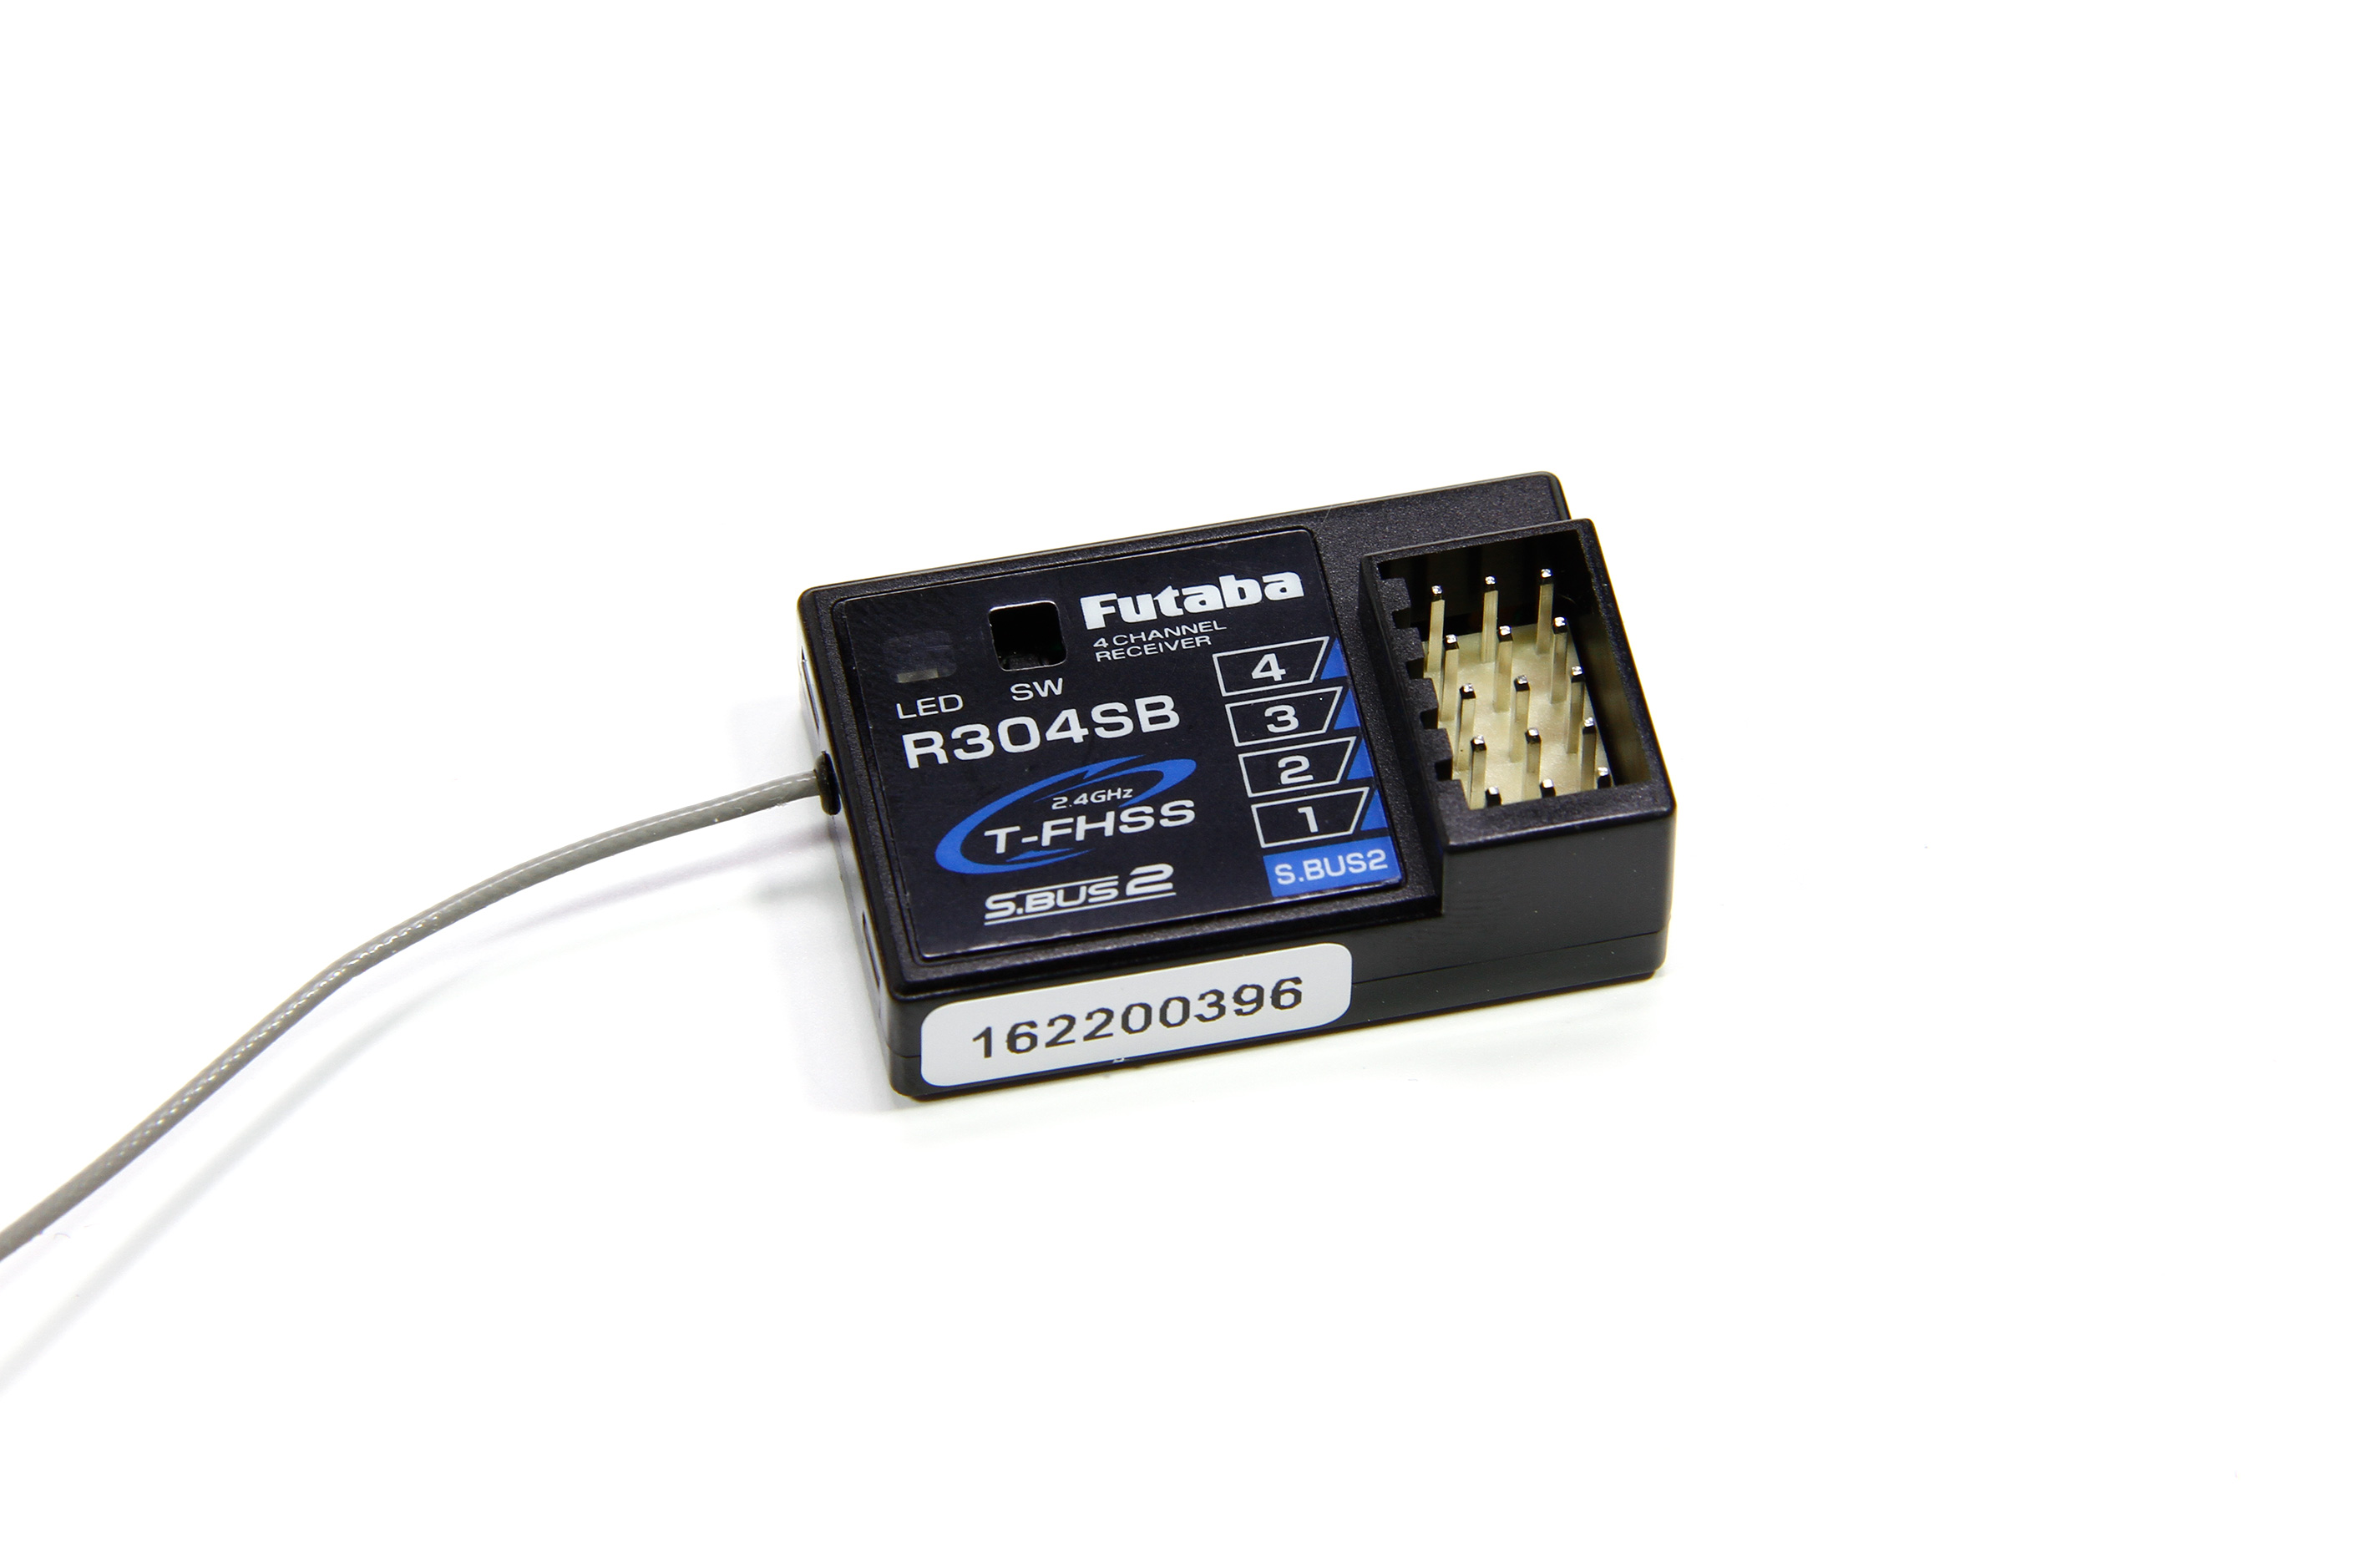 P-R304SB Futaba R304SB 2,4 GHz T-FHSS Telemetry receiver